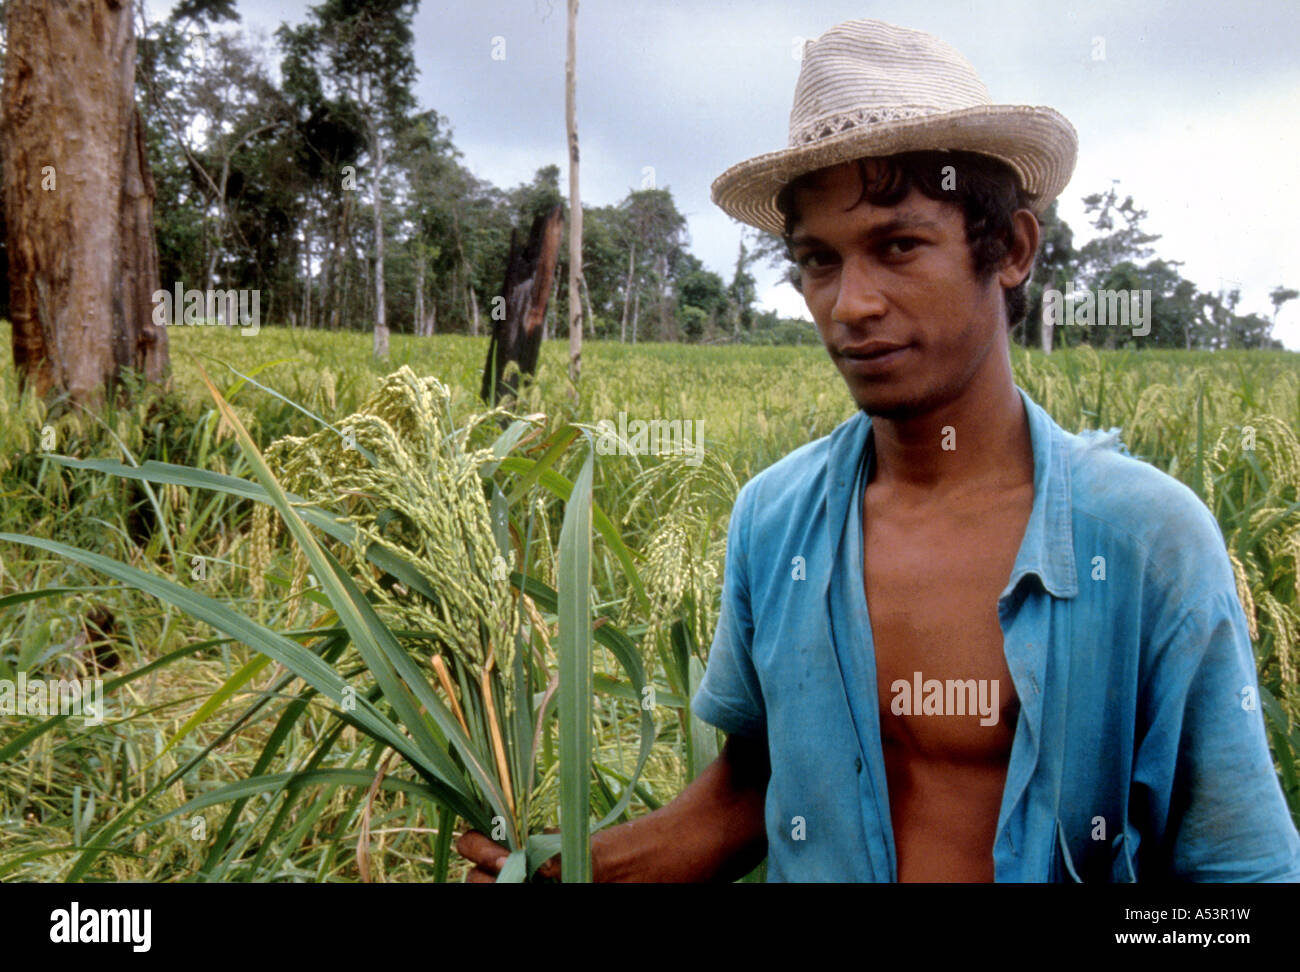 Painet ja1749 3515 agricultura colono agricultor amazonia roulim moura rondonia país nación en desarrollo económicamente menos Foto de stock